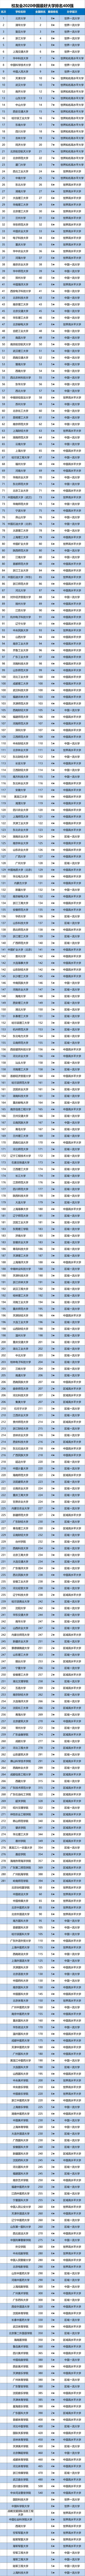 武汉高校2020排名_2020中国大学科研成果排行榜,中南大学排名第8,南大排